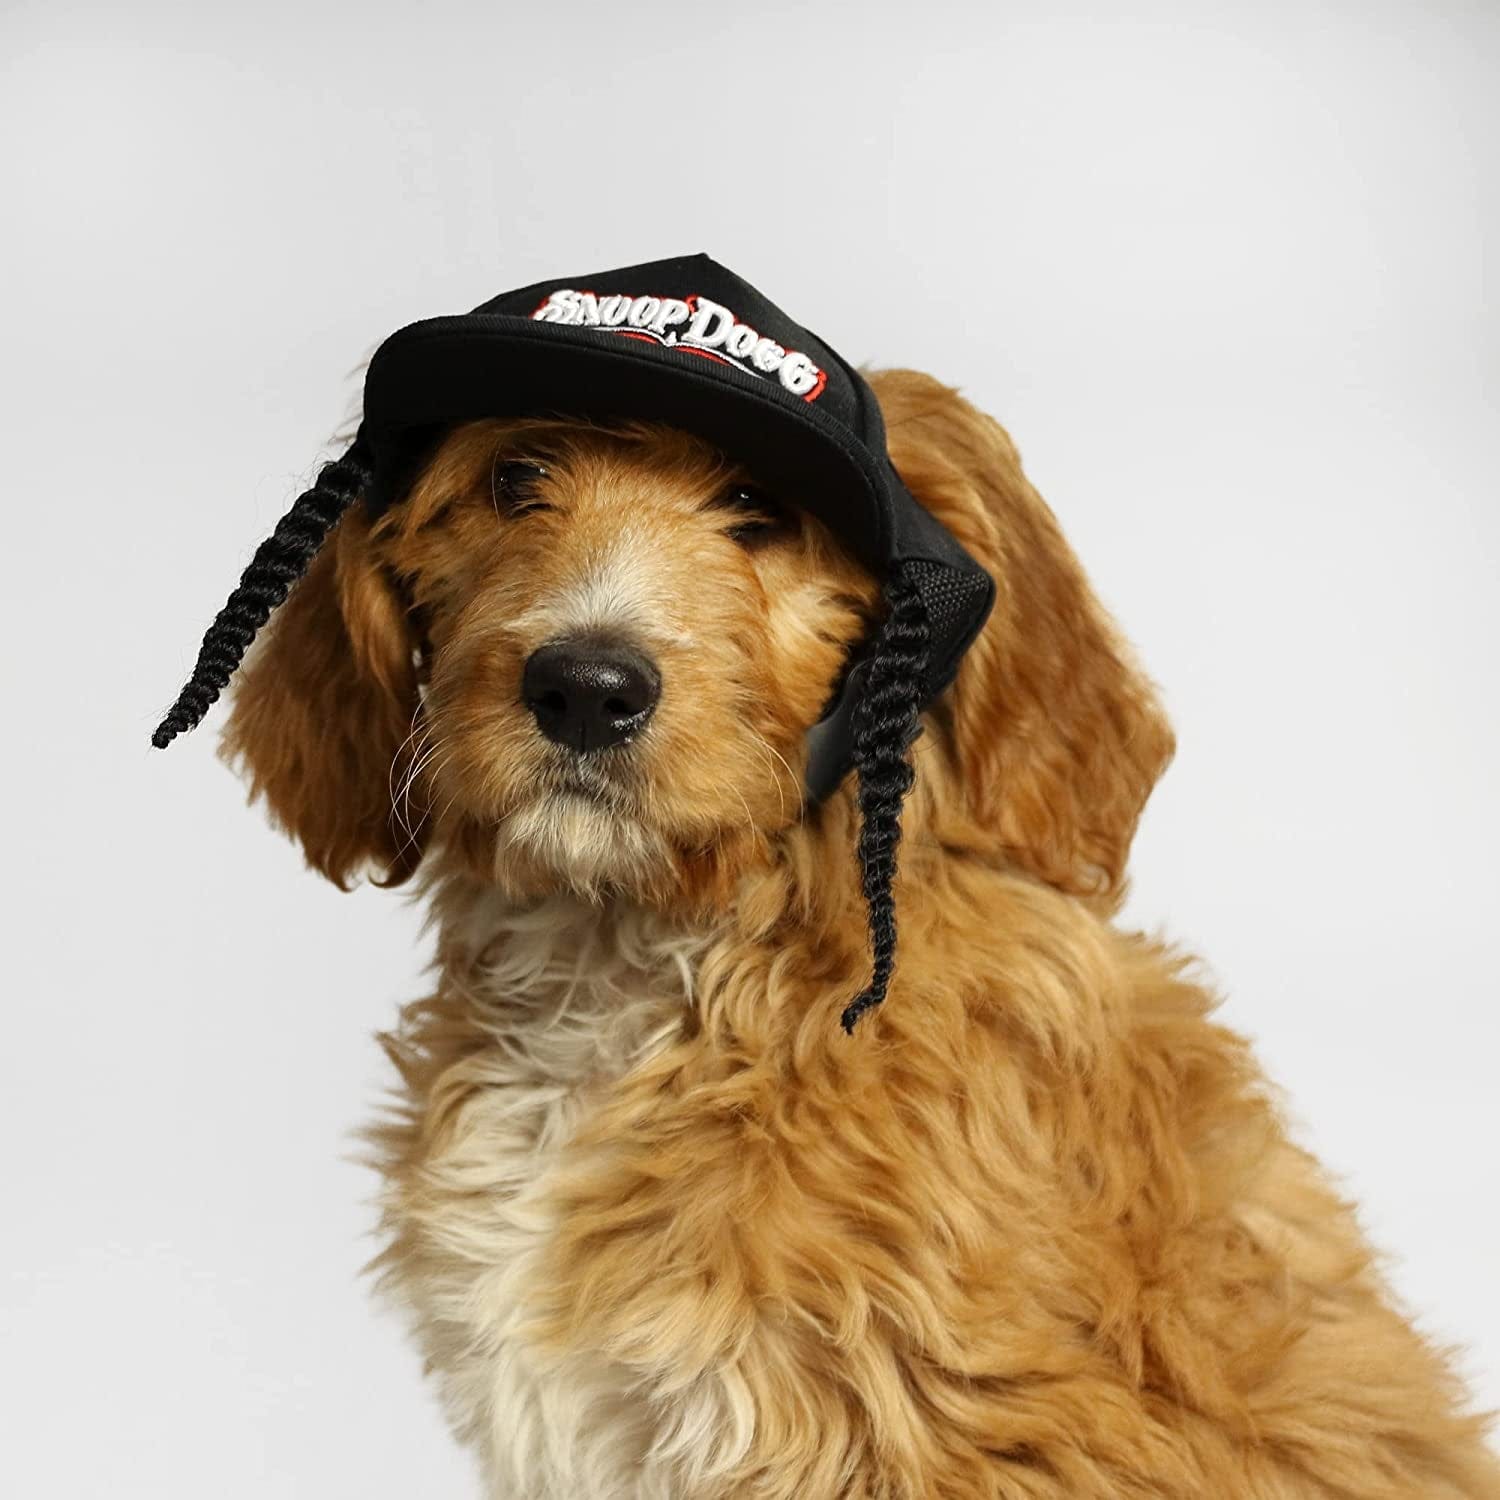 Snoop Doggie Doggs Deluxe Pet Jersey, Halftime, Medium : : Pet  Supplies